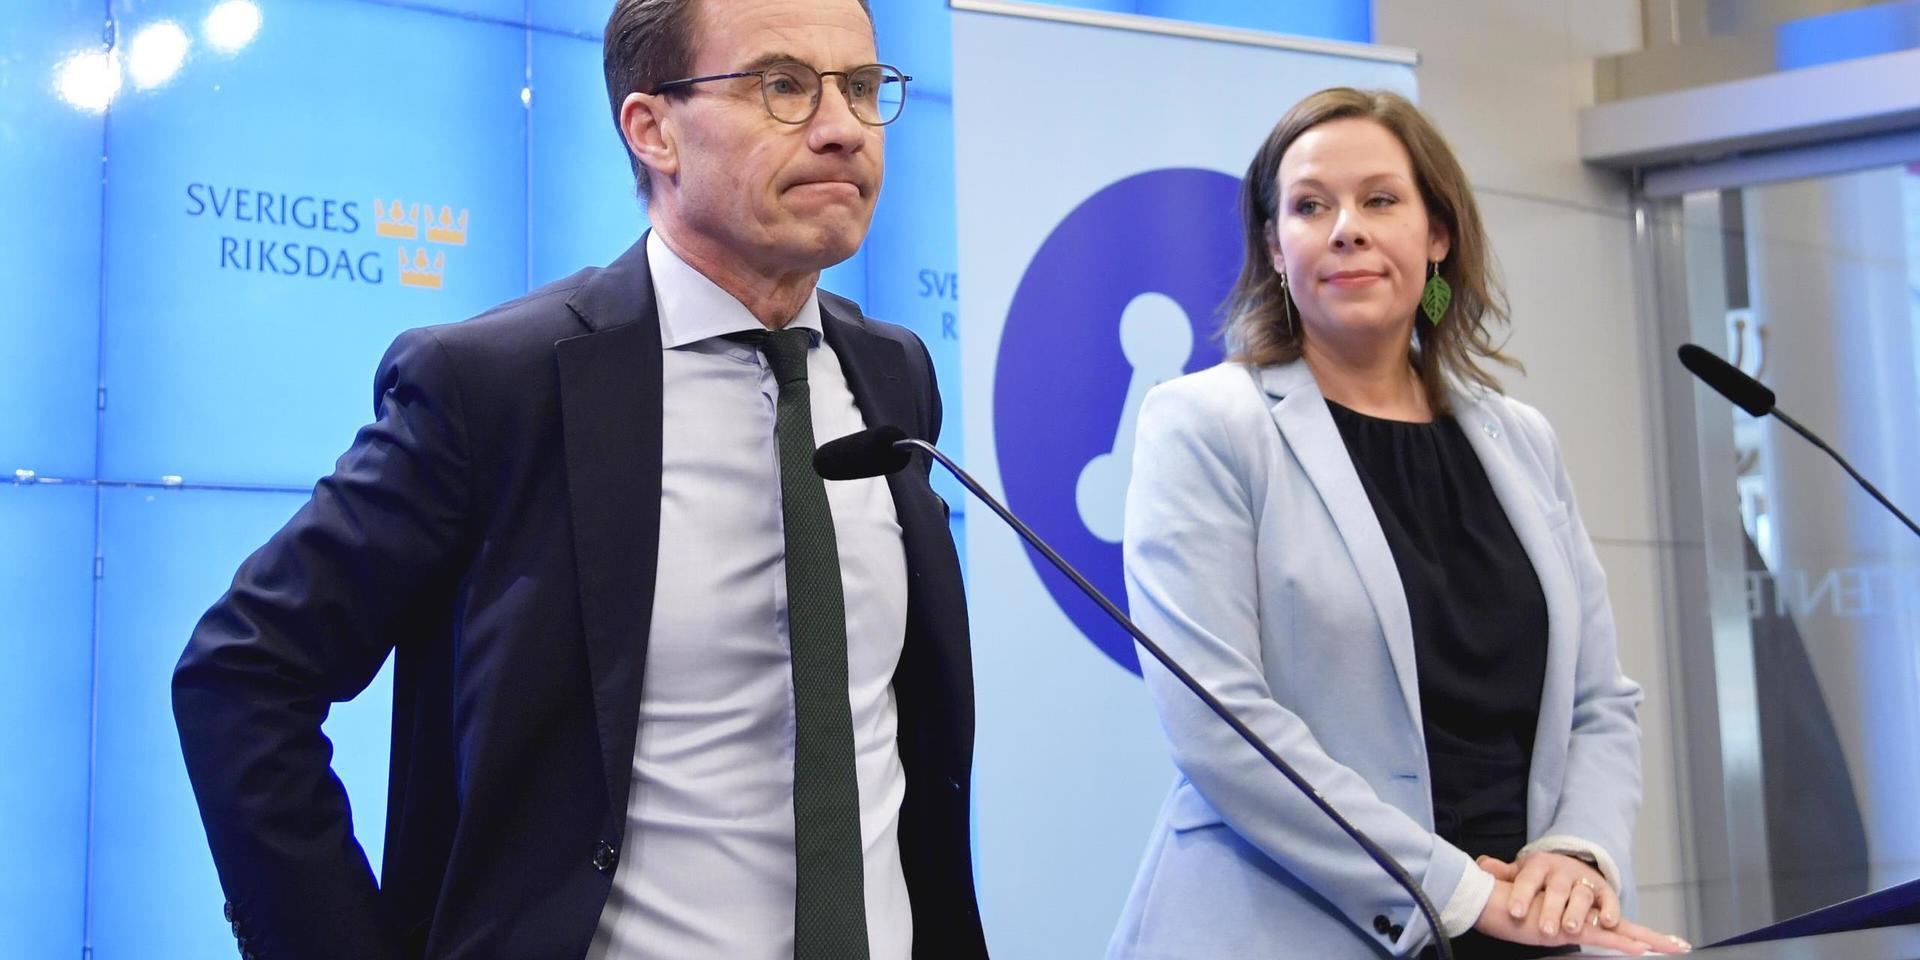 Förhandlingar som brakat samman. Ulf Kristersson och Moderaternas migrationspolitiske talesperson Maria Malmer Stenergard har en tuff tid framför sig.